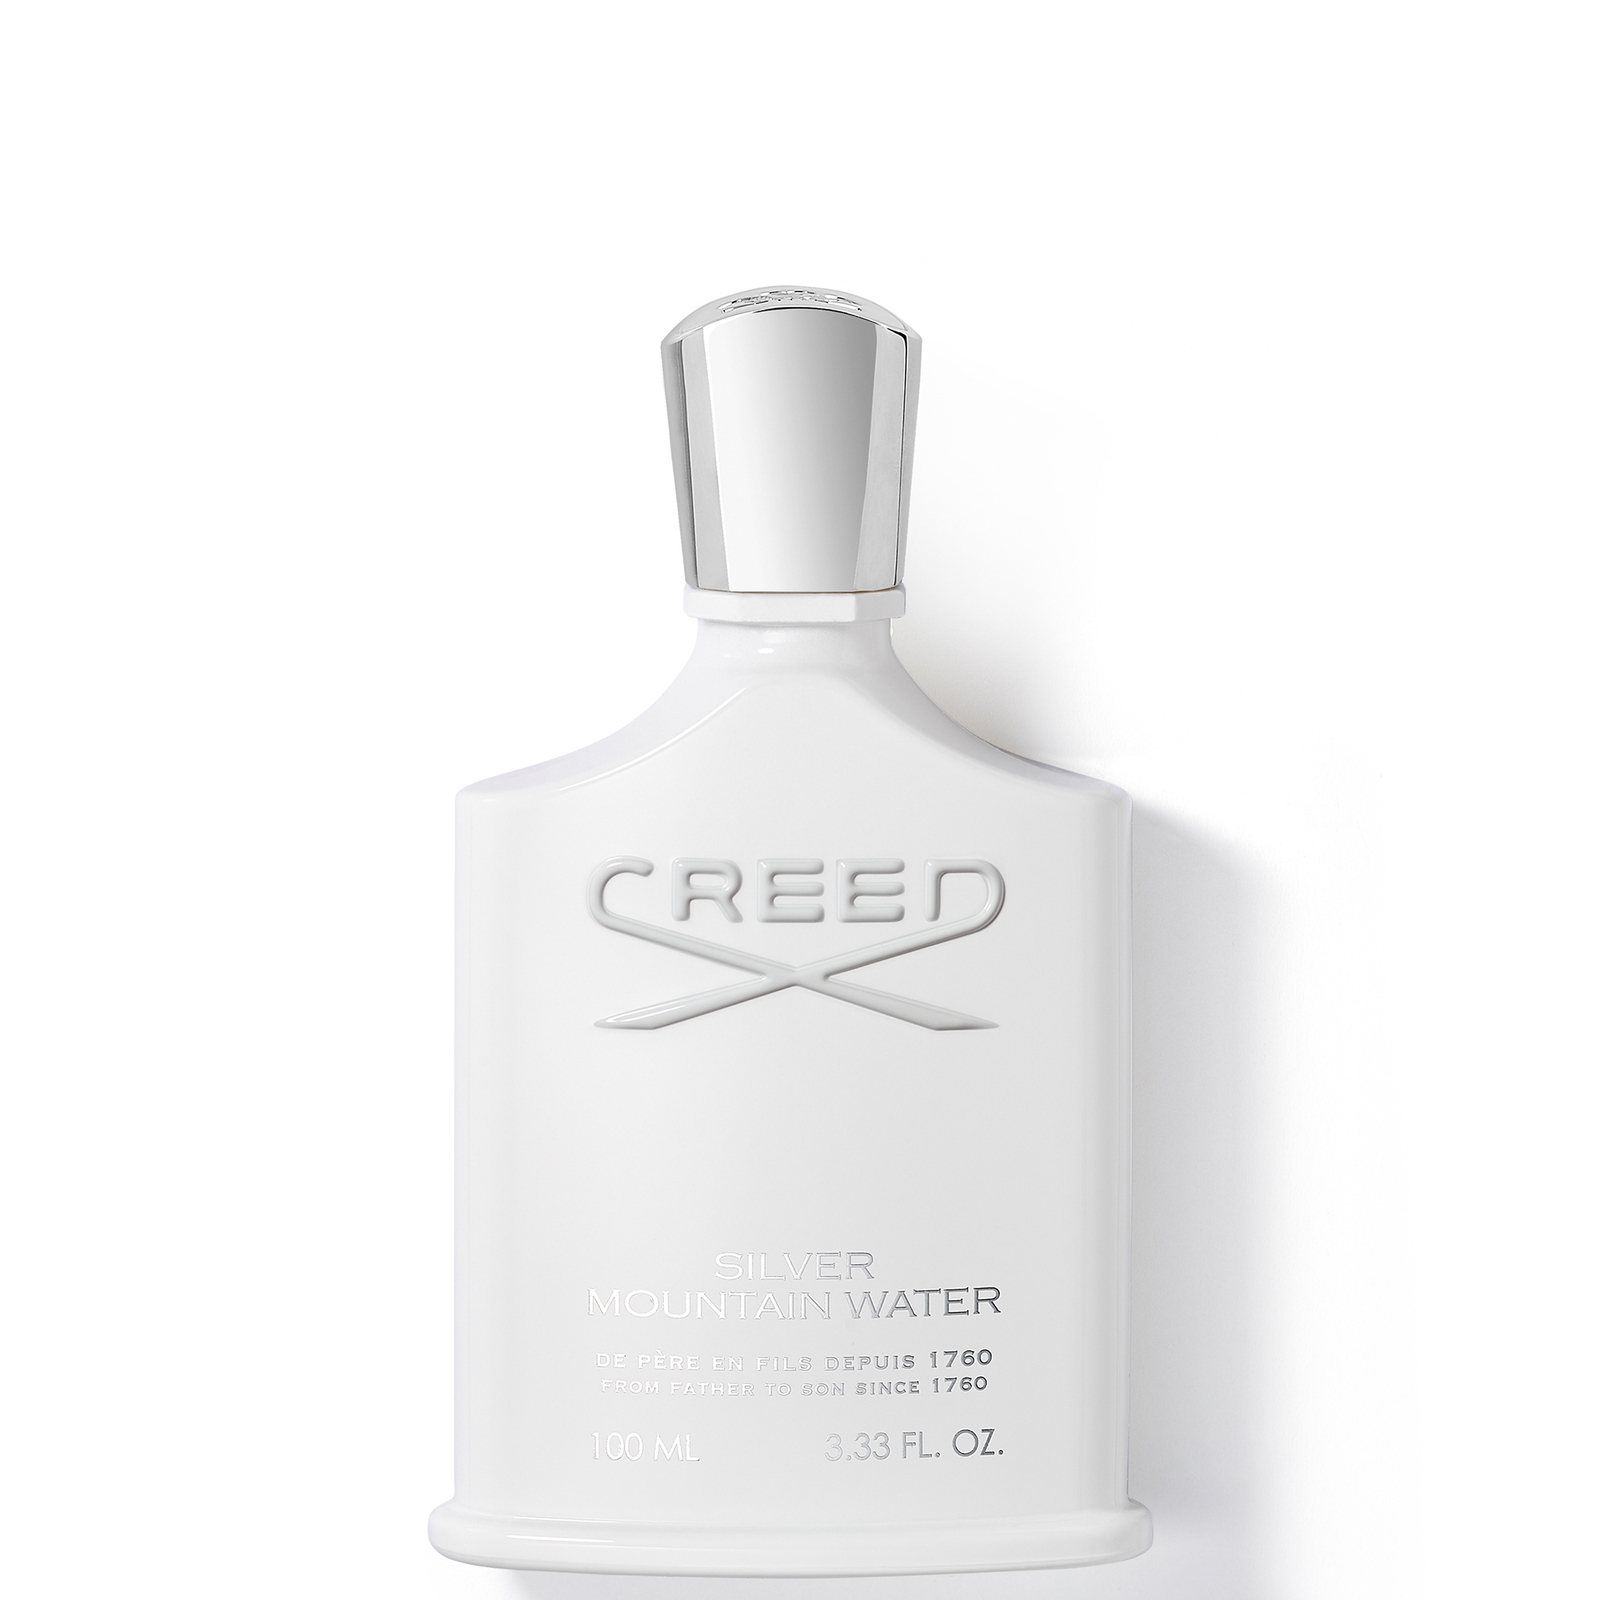 Photos - Women's Fragrance Creed Silver Mountain Water Eau de Parfum - 100ml 